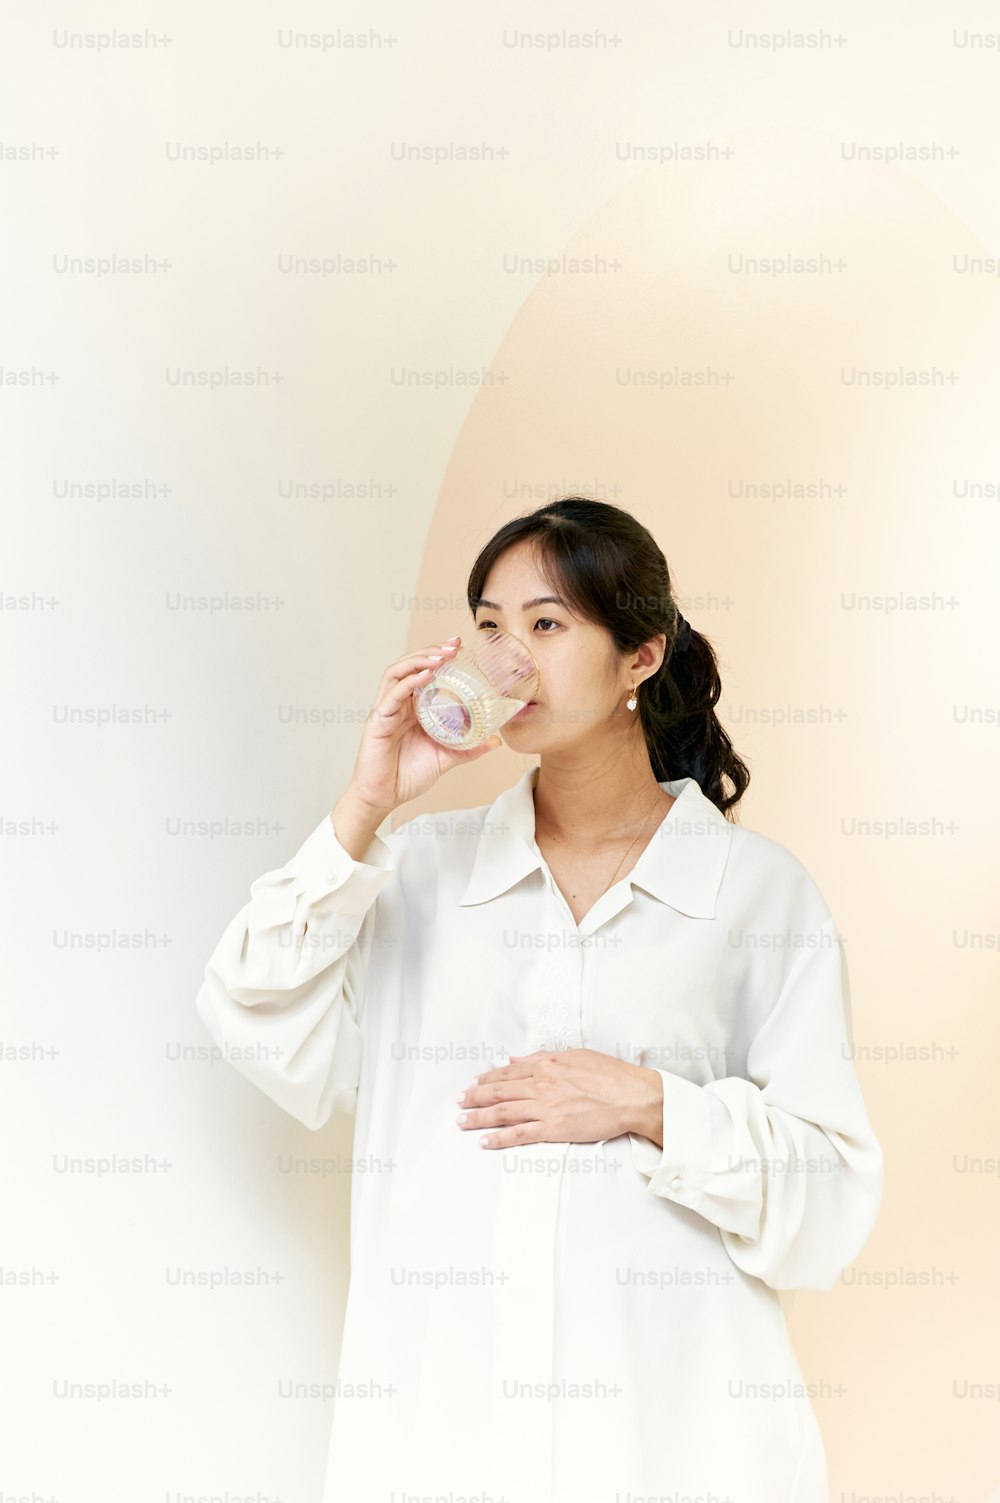 Eine Frau in einem weißen Hemd, die aus einem Glas trinkt